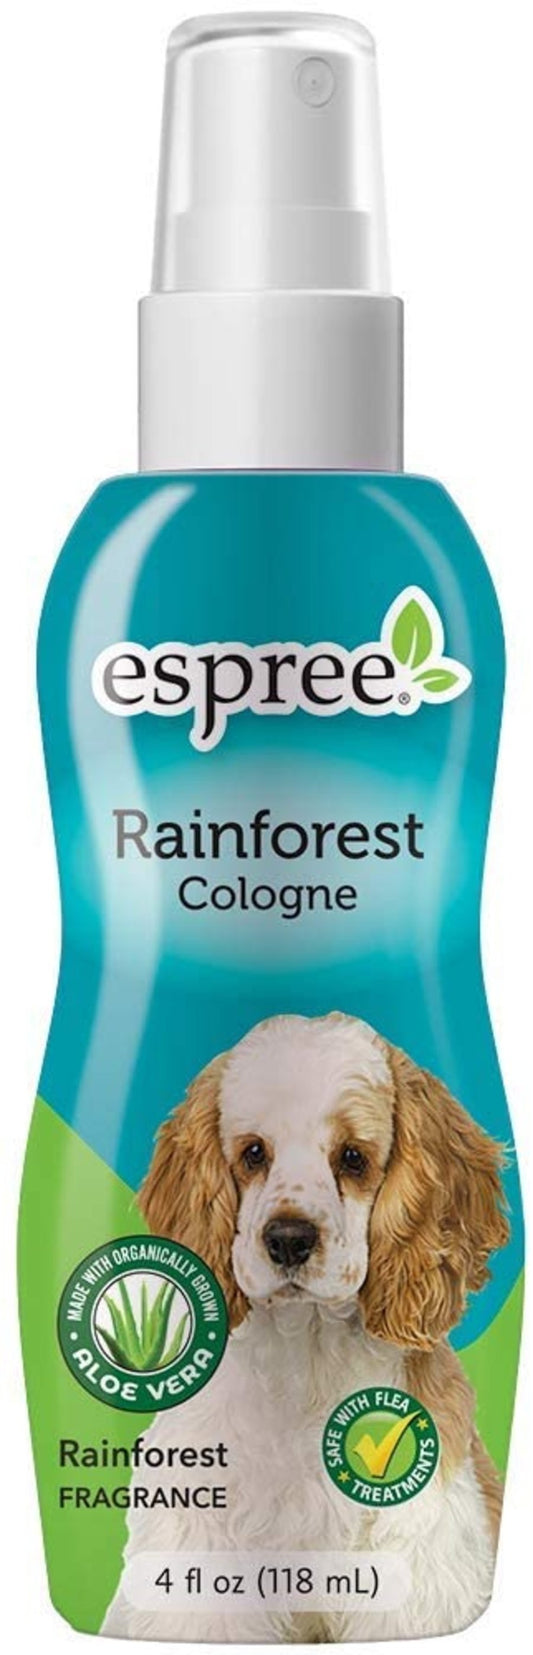 Espree Rainforest Cologne Spray, 4oz, Espree